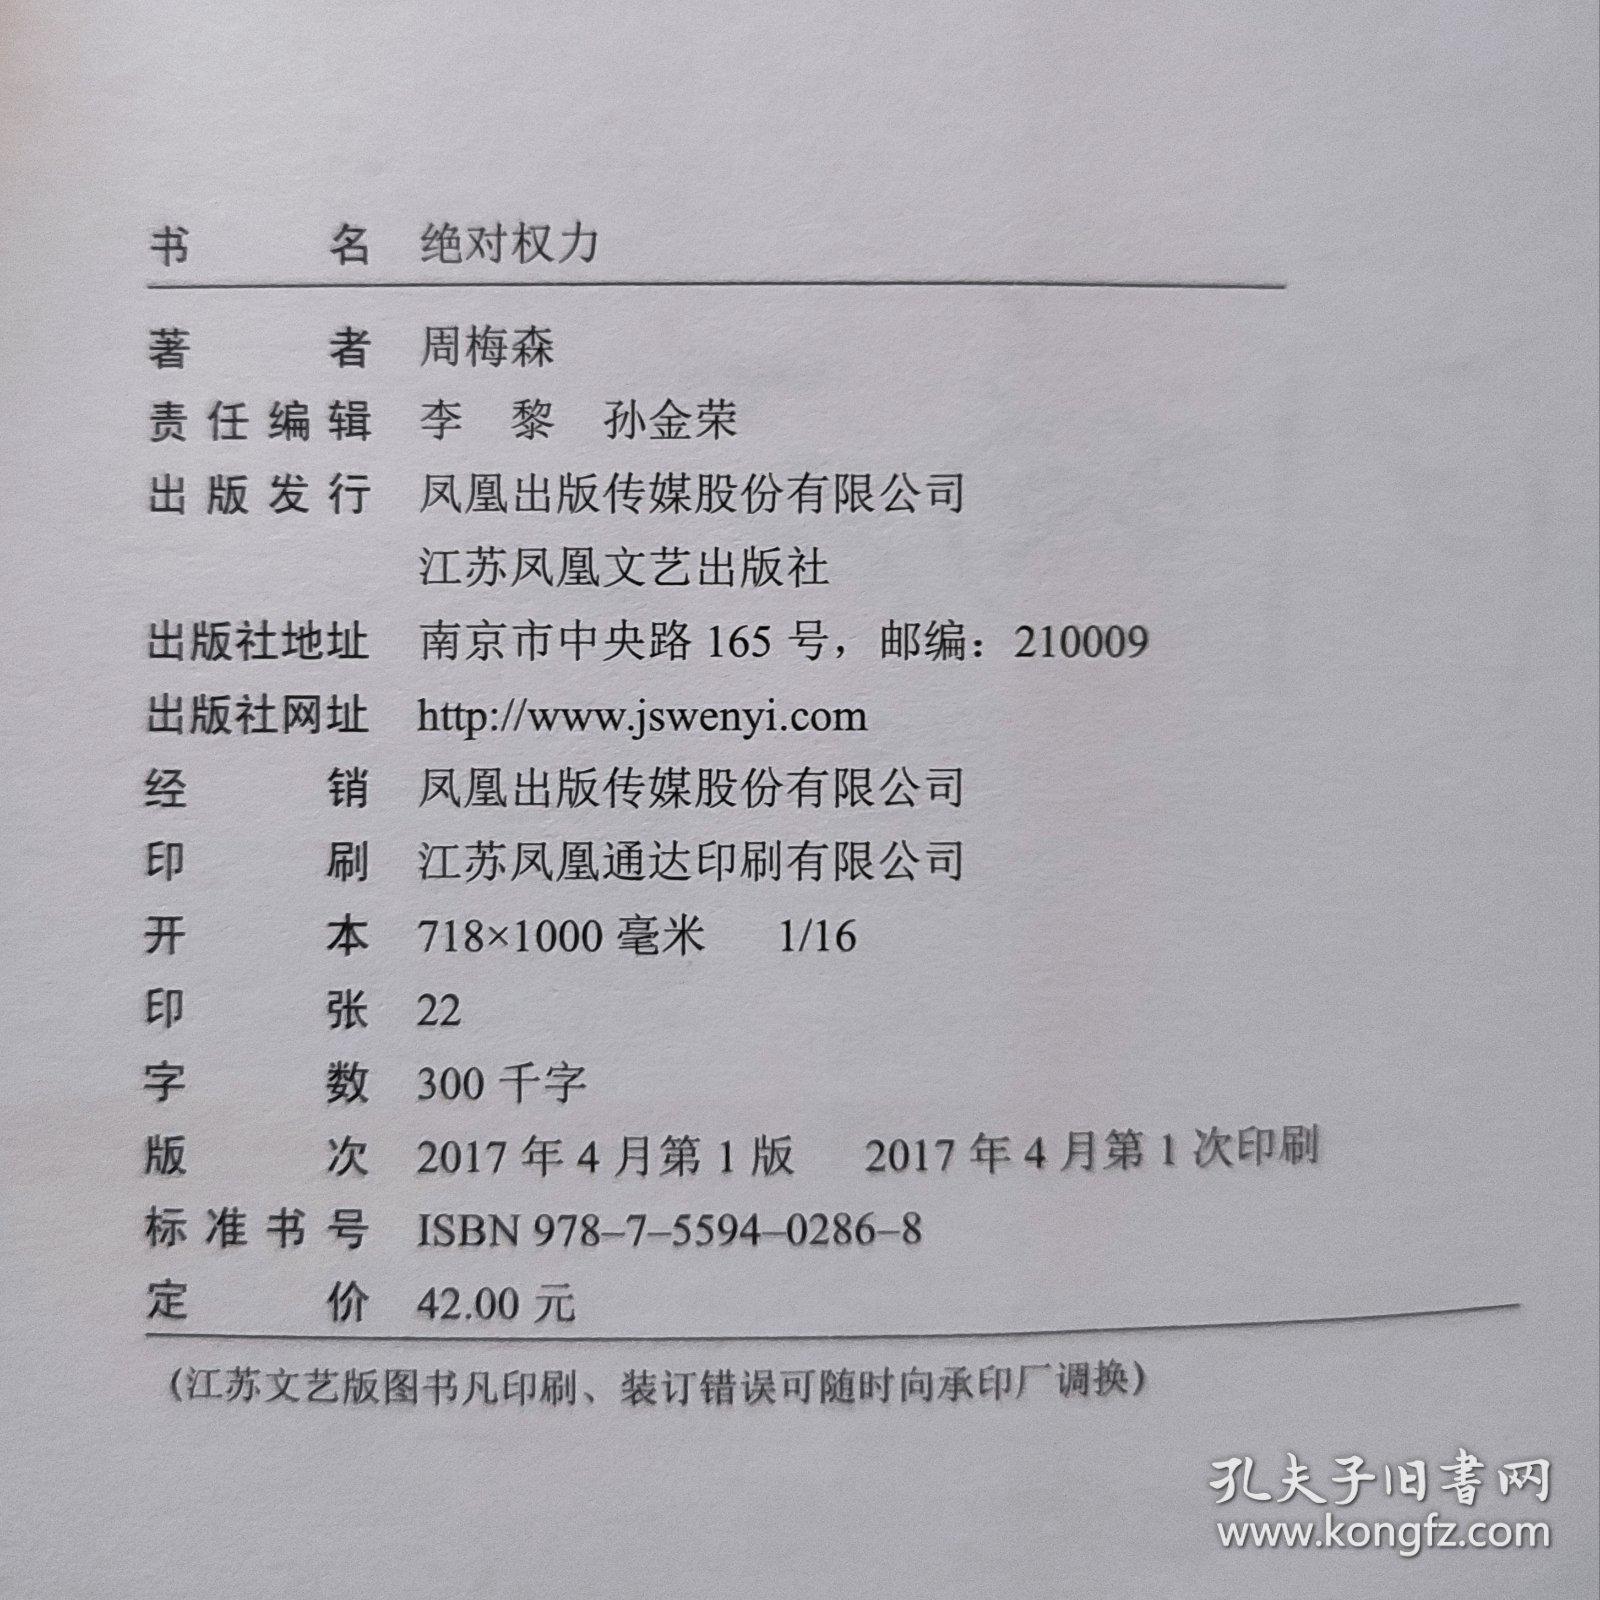 周梅森 签名本《绝对权利》 2017年1版1印 中国作协主席团委员 江苏作协副主席